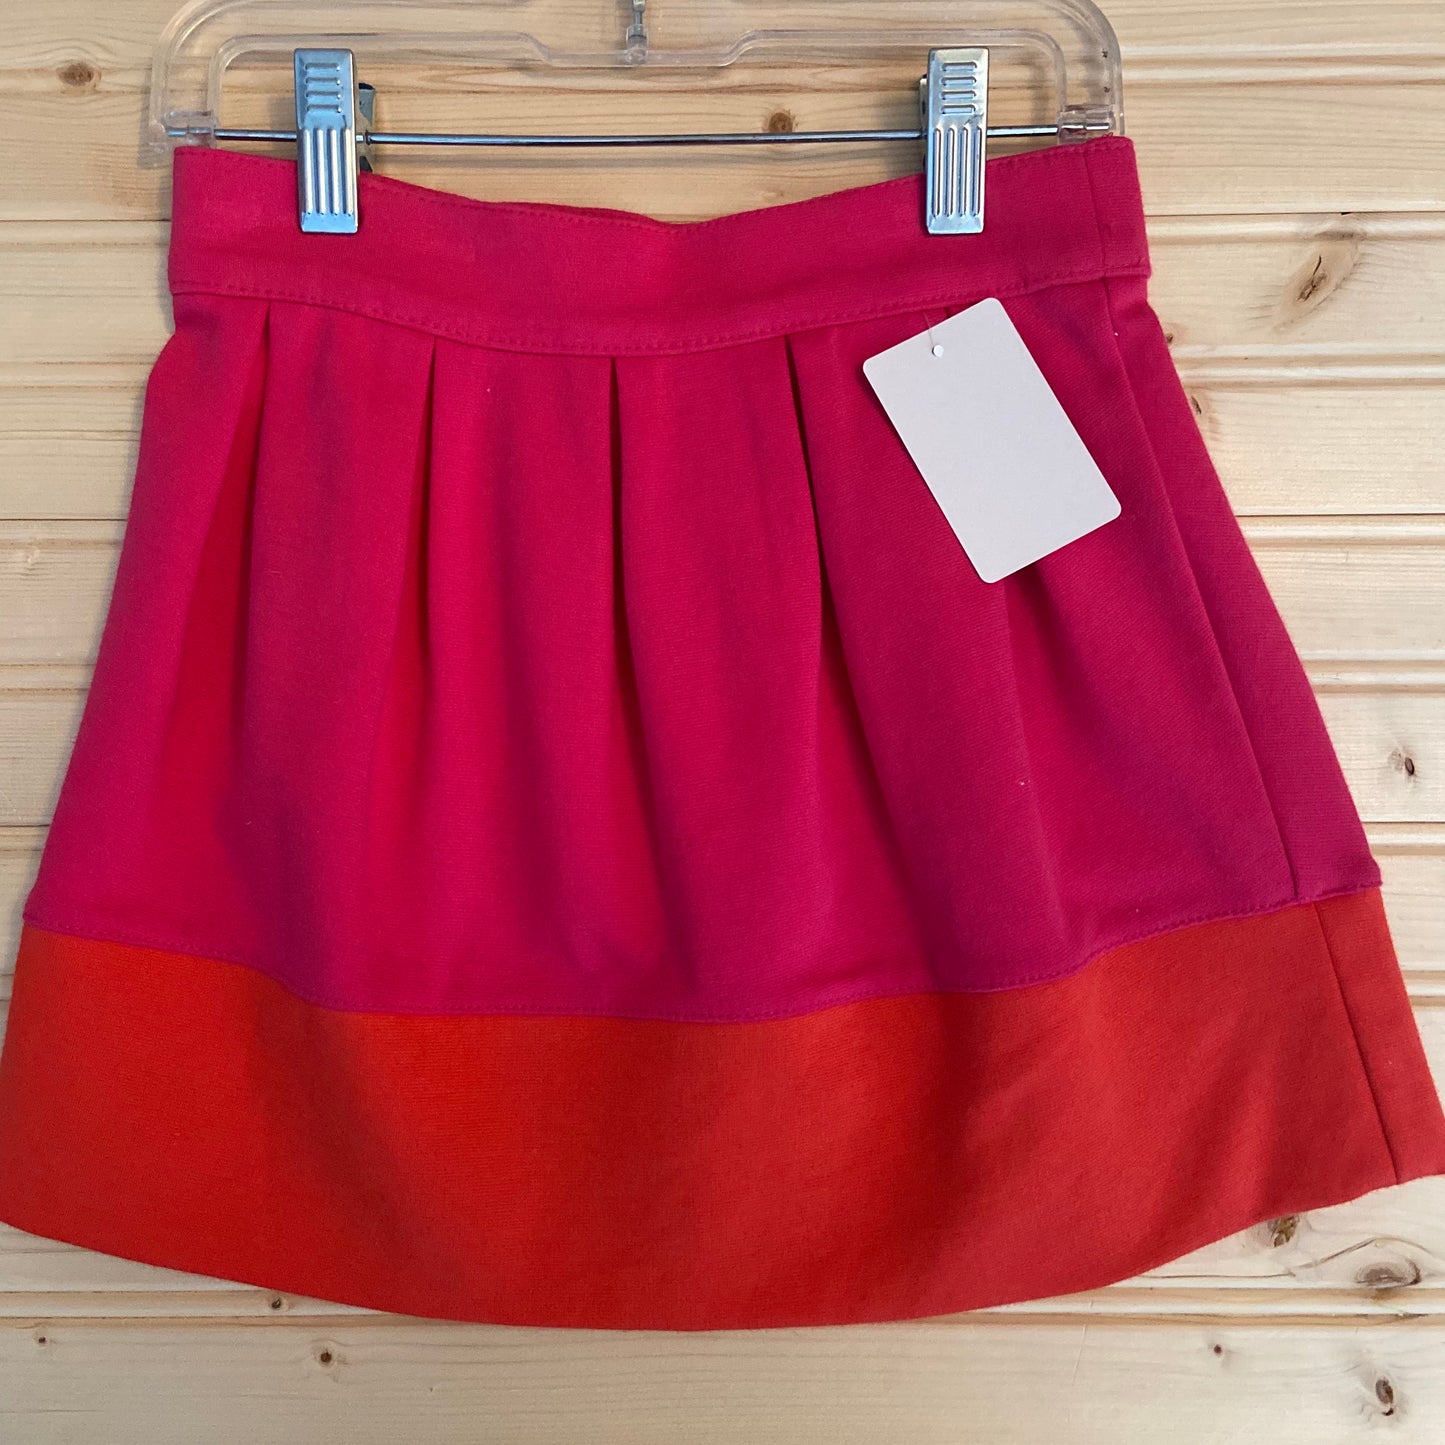 Pink & Orange Skirt